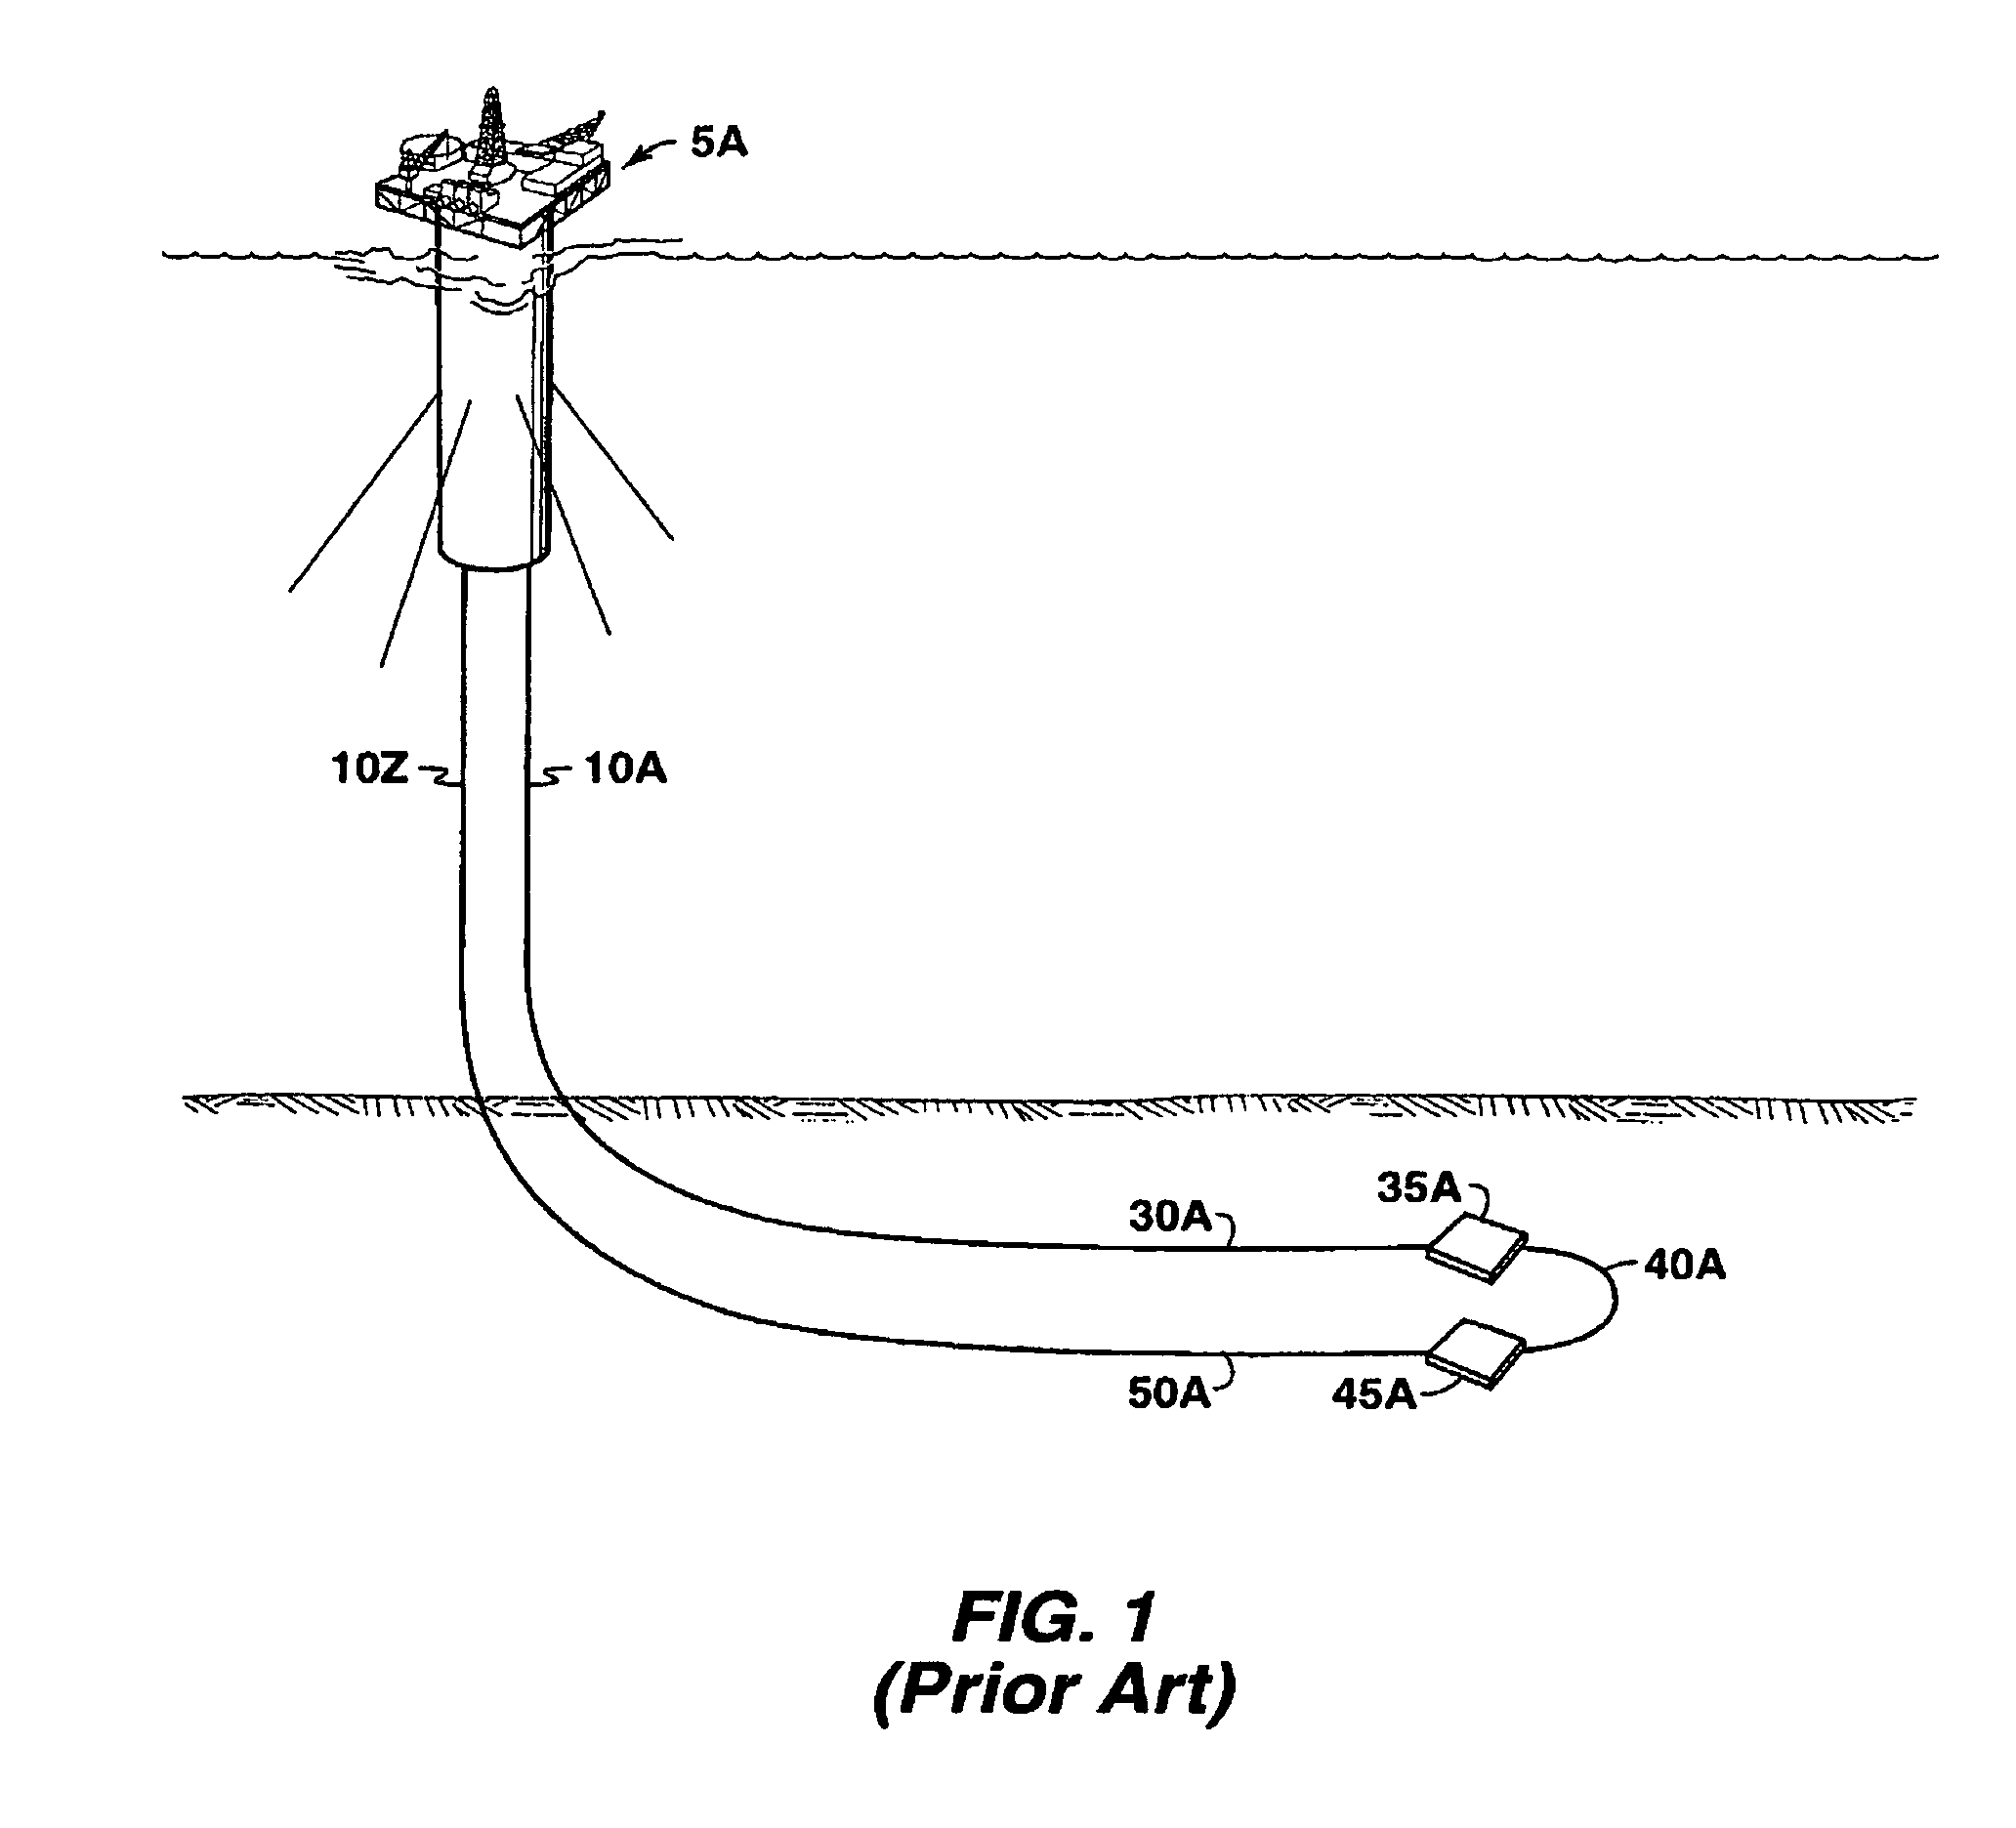 Piggable flowline-riser system